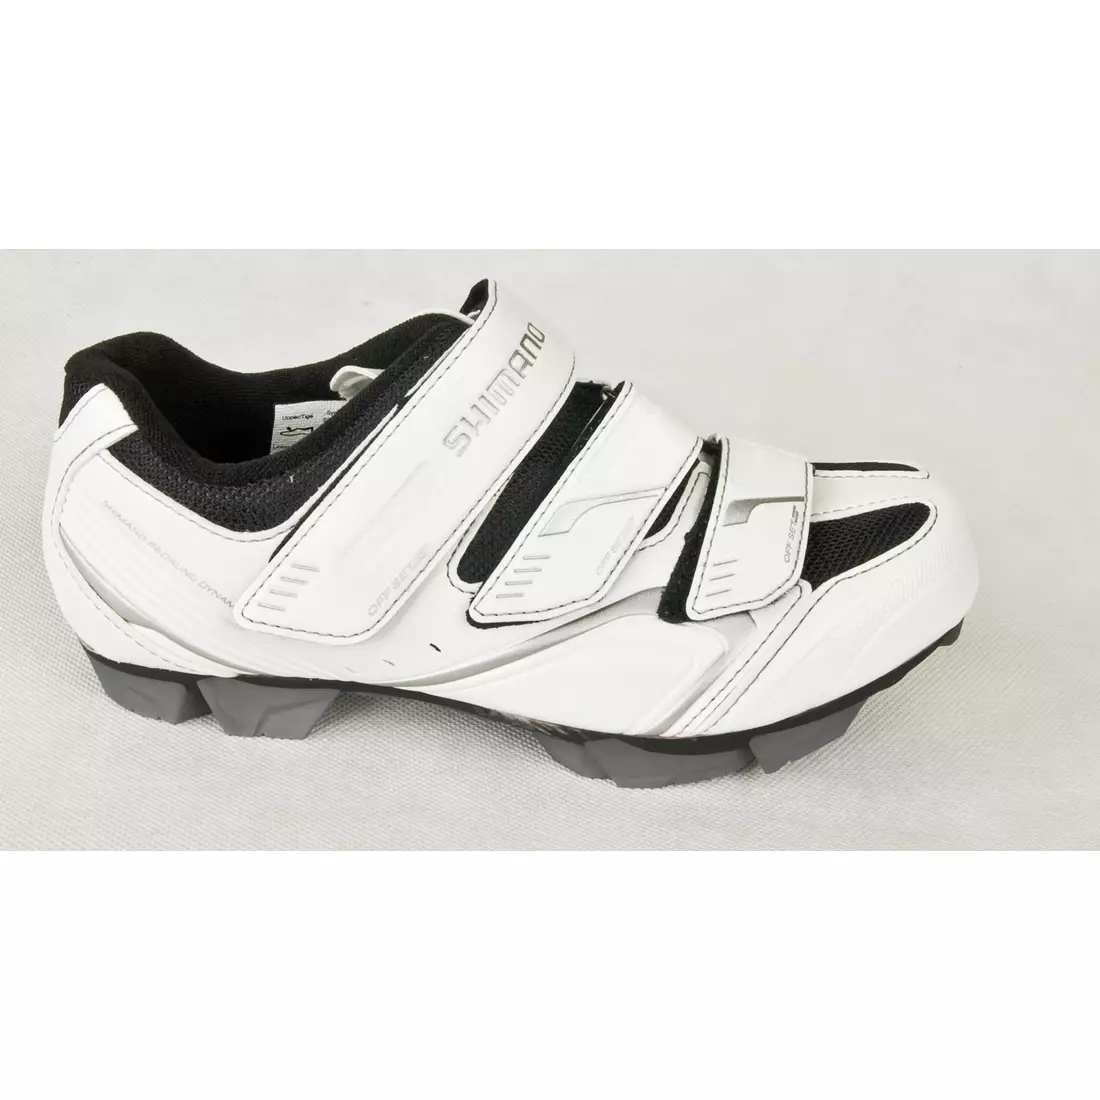 SHIMANO SH-WM52 - women's cycling shoes, white